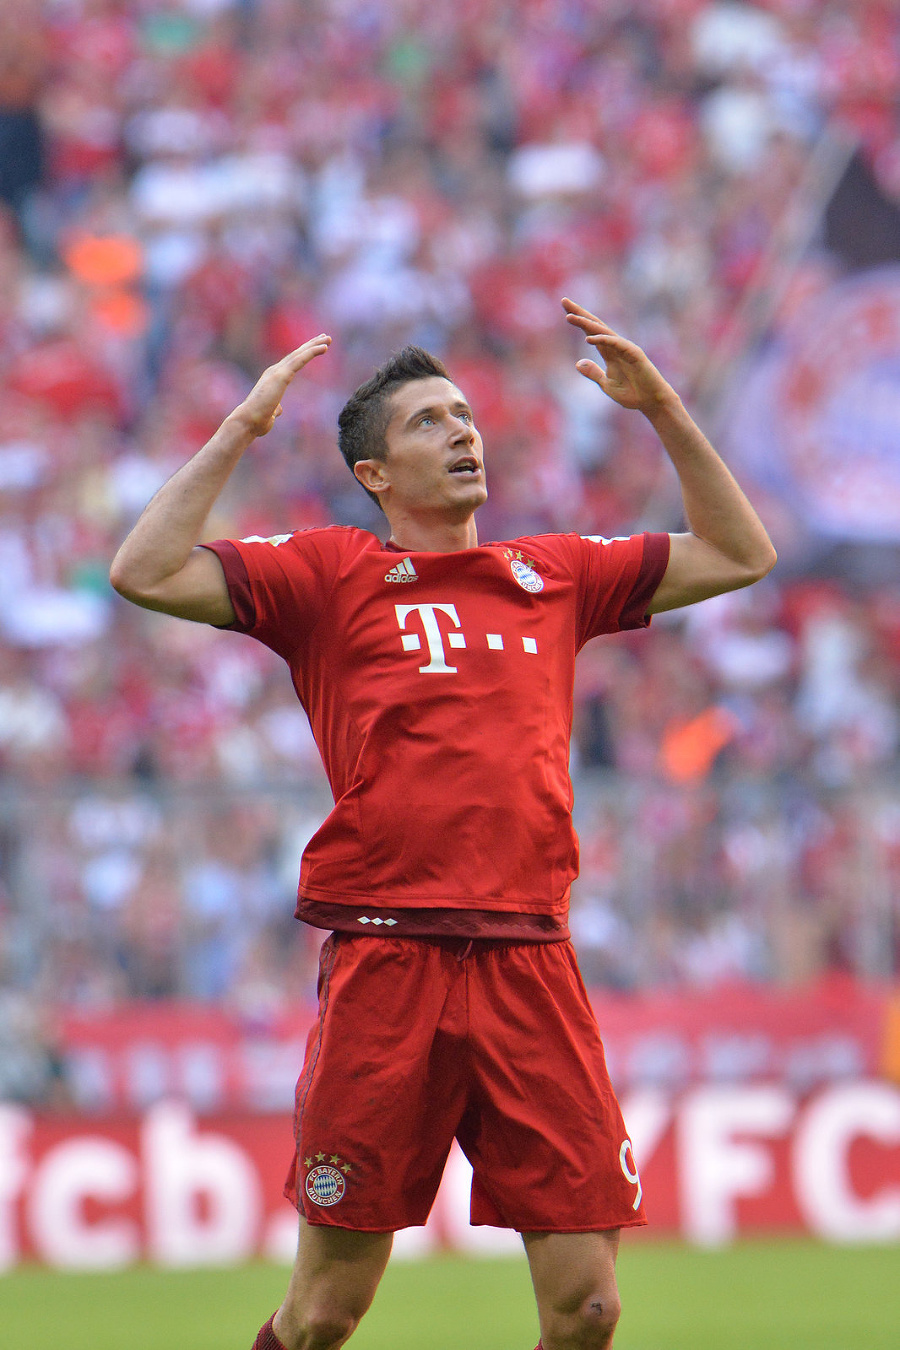 Neuveriteľné predstavenie hviezdy Bayernu